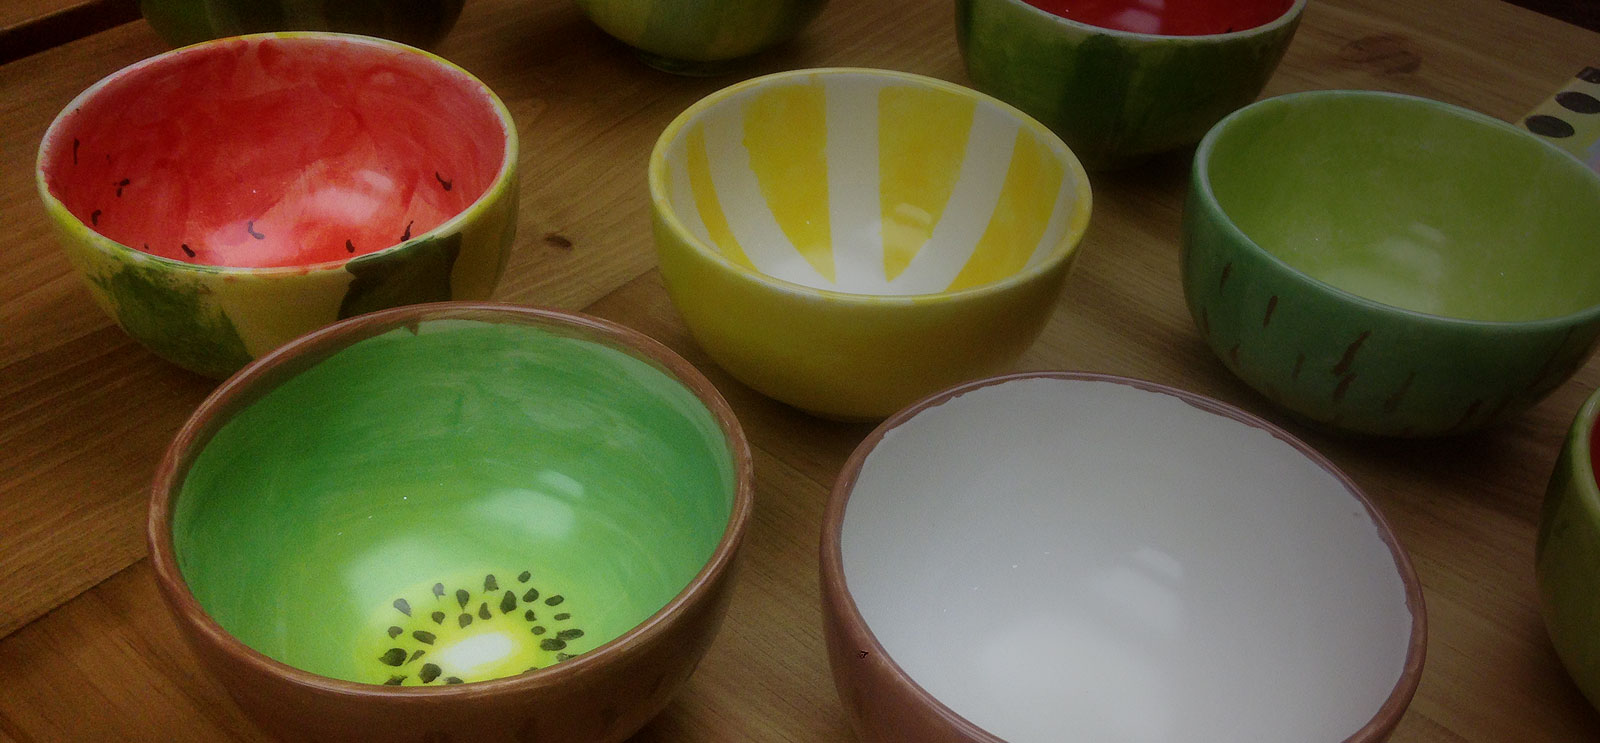 Regala experiencias: Kit regalo para pintar cerámica en casa - ColorIT